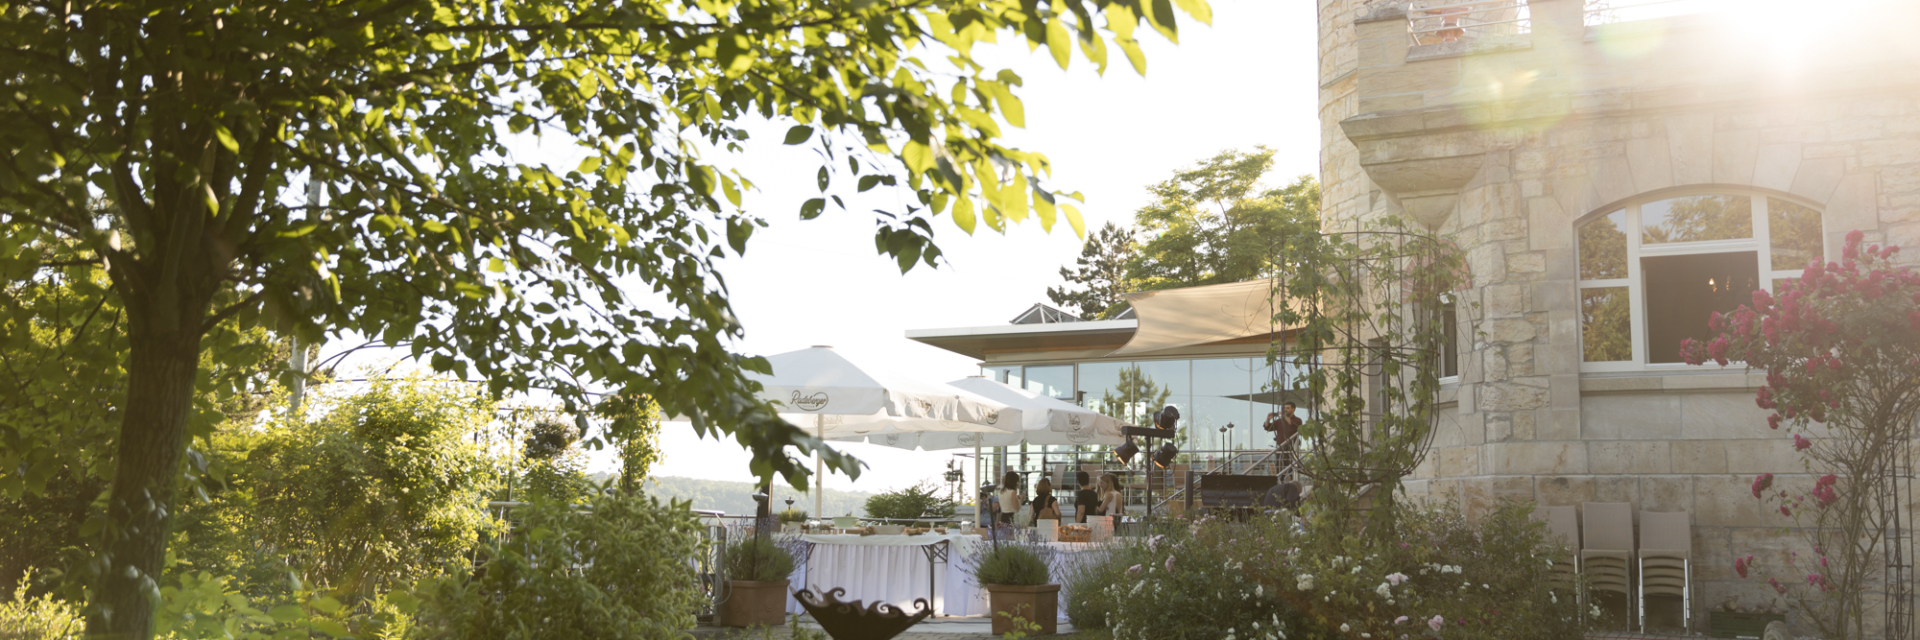 Restaurant am Landgrafen von außen bei Sonnenschein © Landgrafen Restaurant, Foto: Jan Birkenbeil